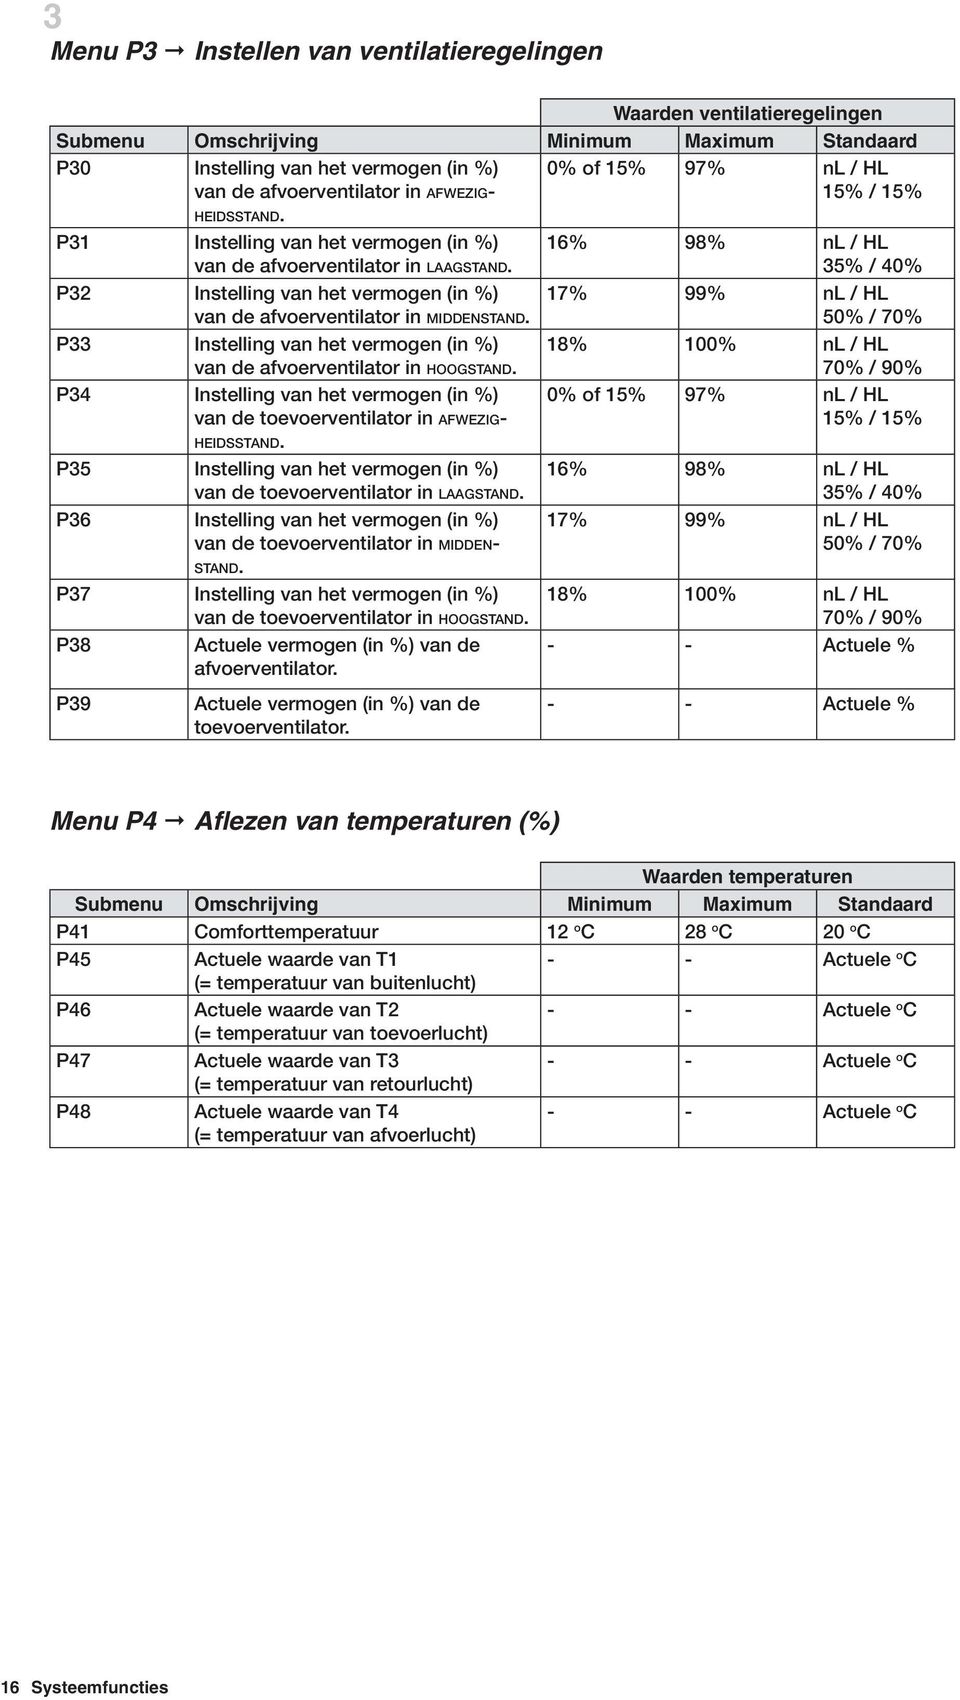 P33 Instelling van het vermogen (in %) van de afvoerventilator in HOOGSTAND. P34 Instelling van het vermogen (in %) van de toevoerventilator in AFWEZIG- HEIDSSTAND.